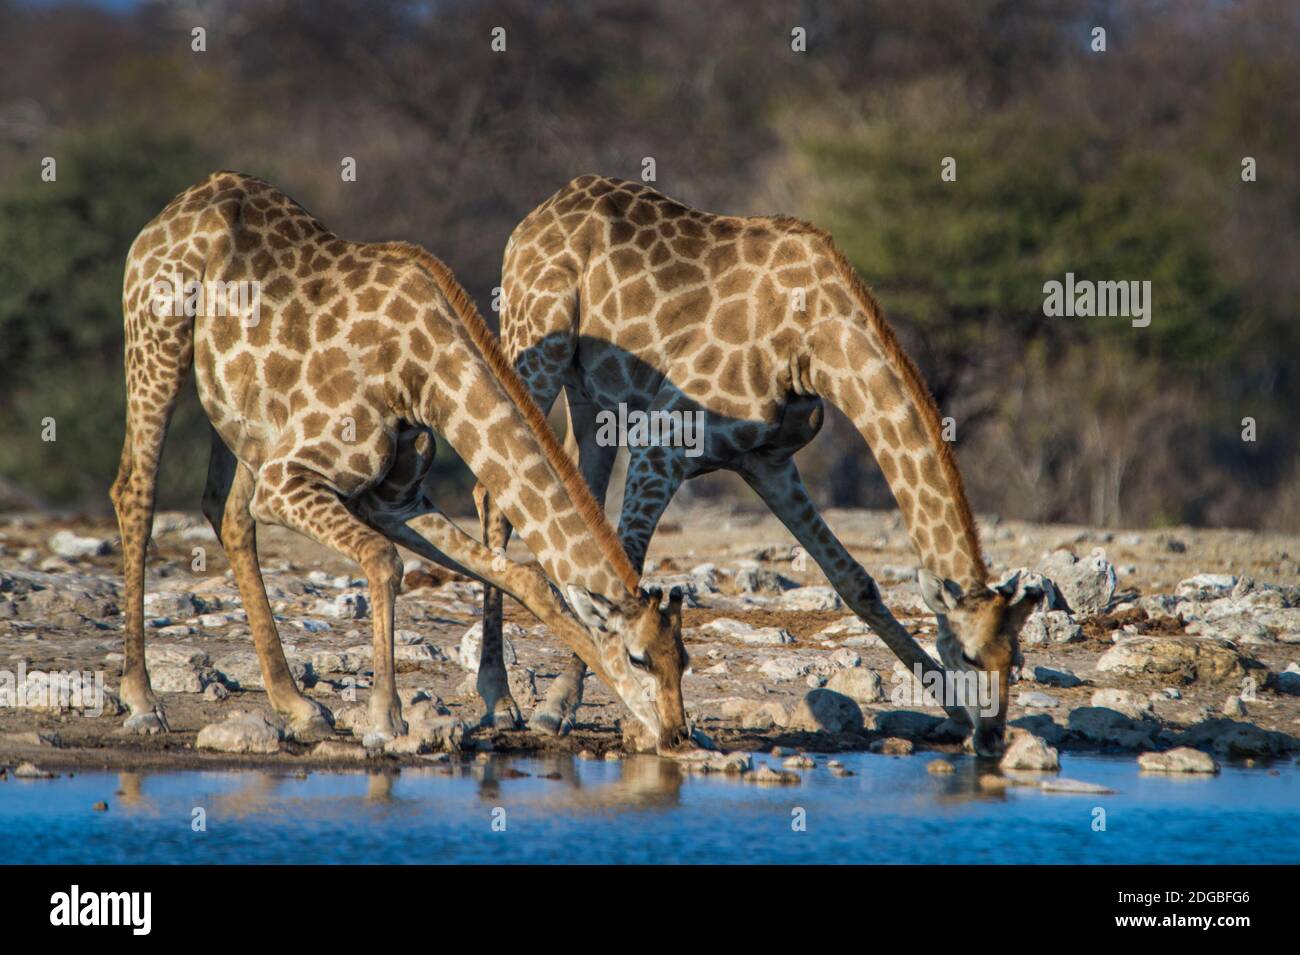 Girafes méridionales (Giraffa camelopardalis) eau potable à la rivière, Parc national d'Etosha, Namibie Banque D'Images